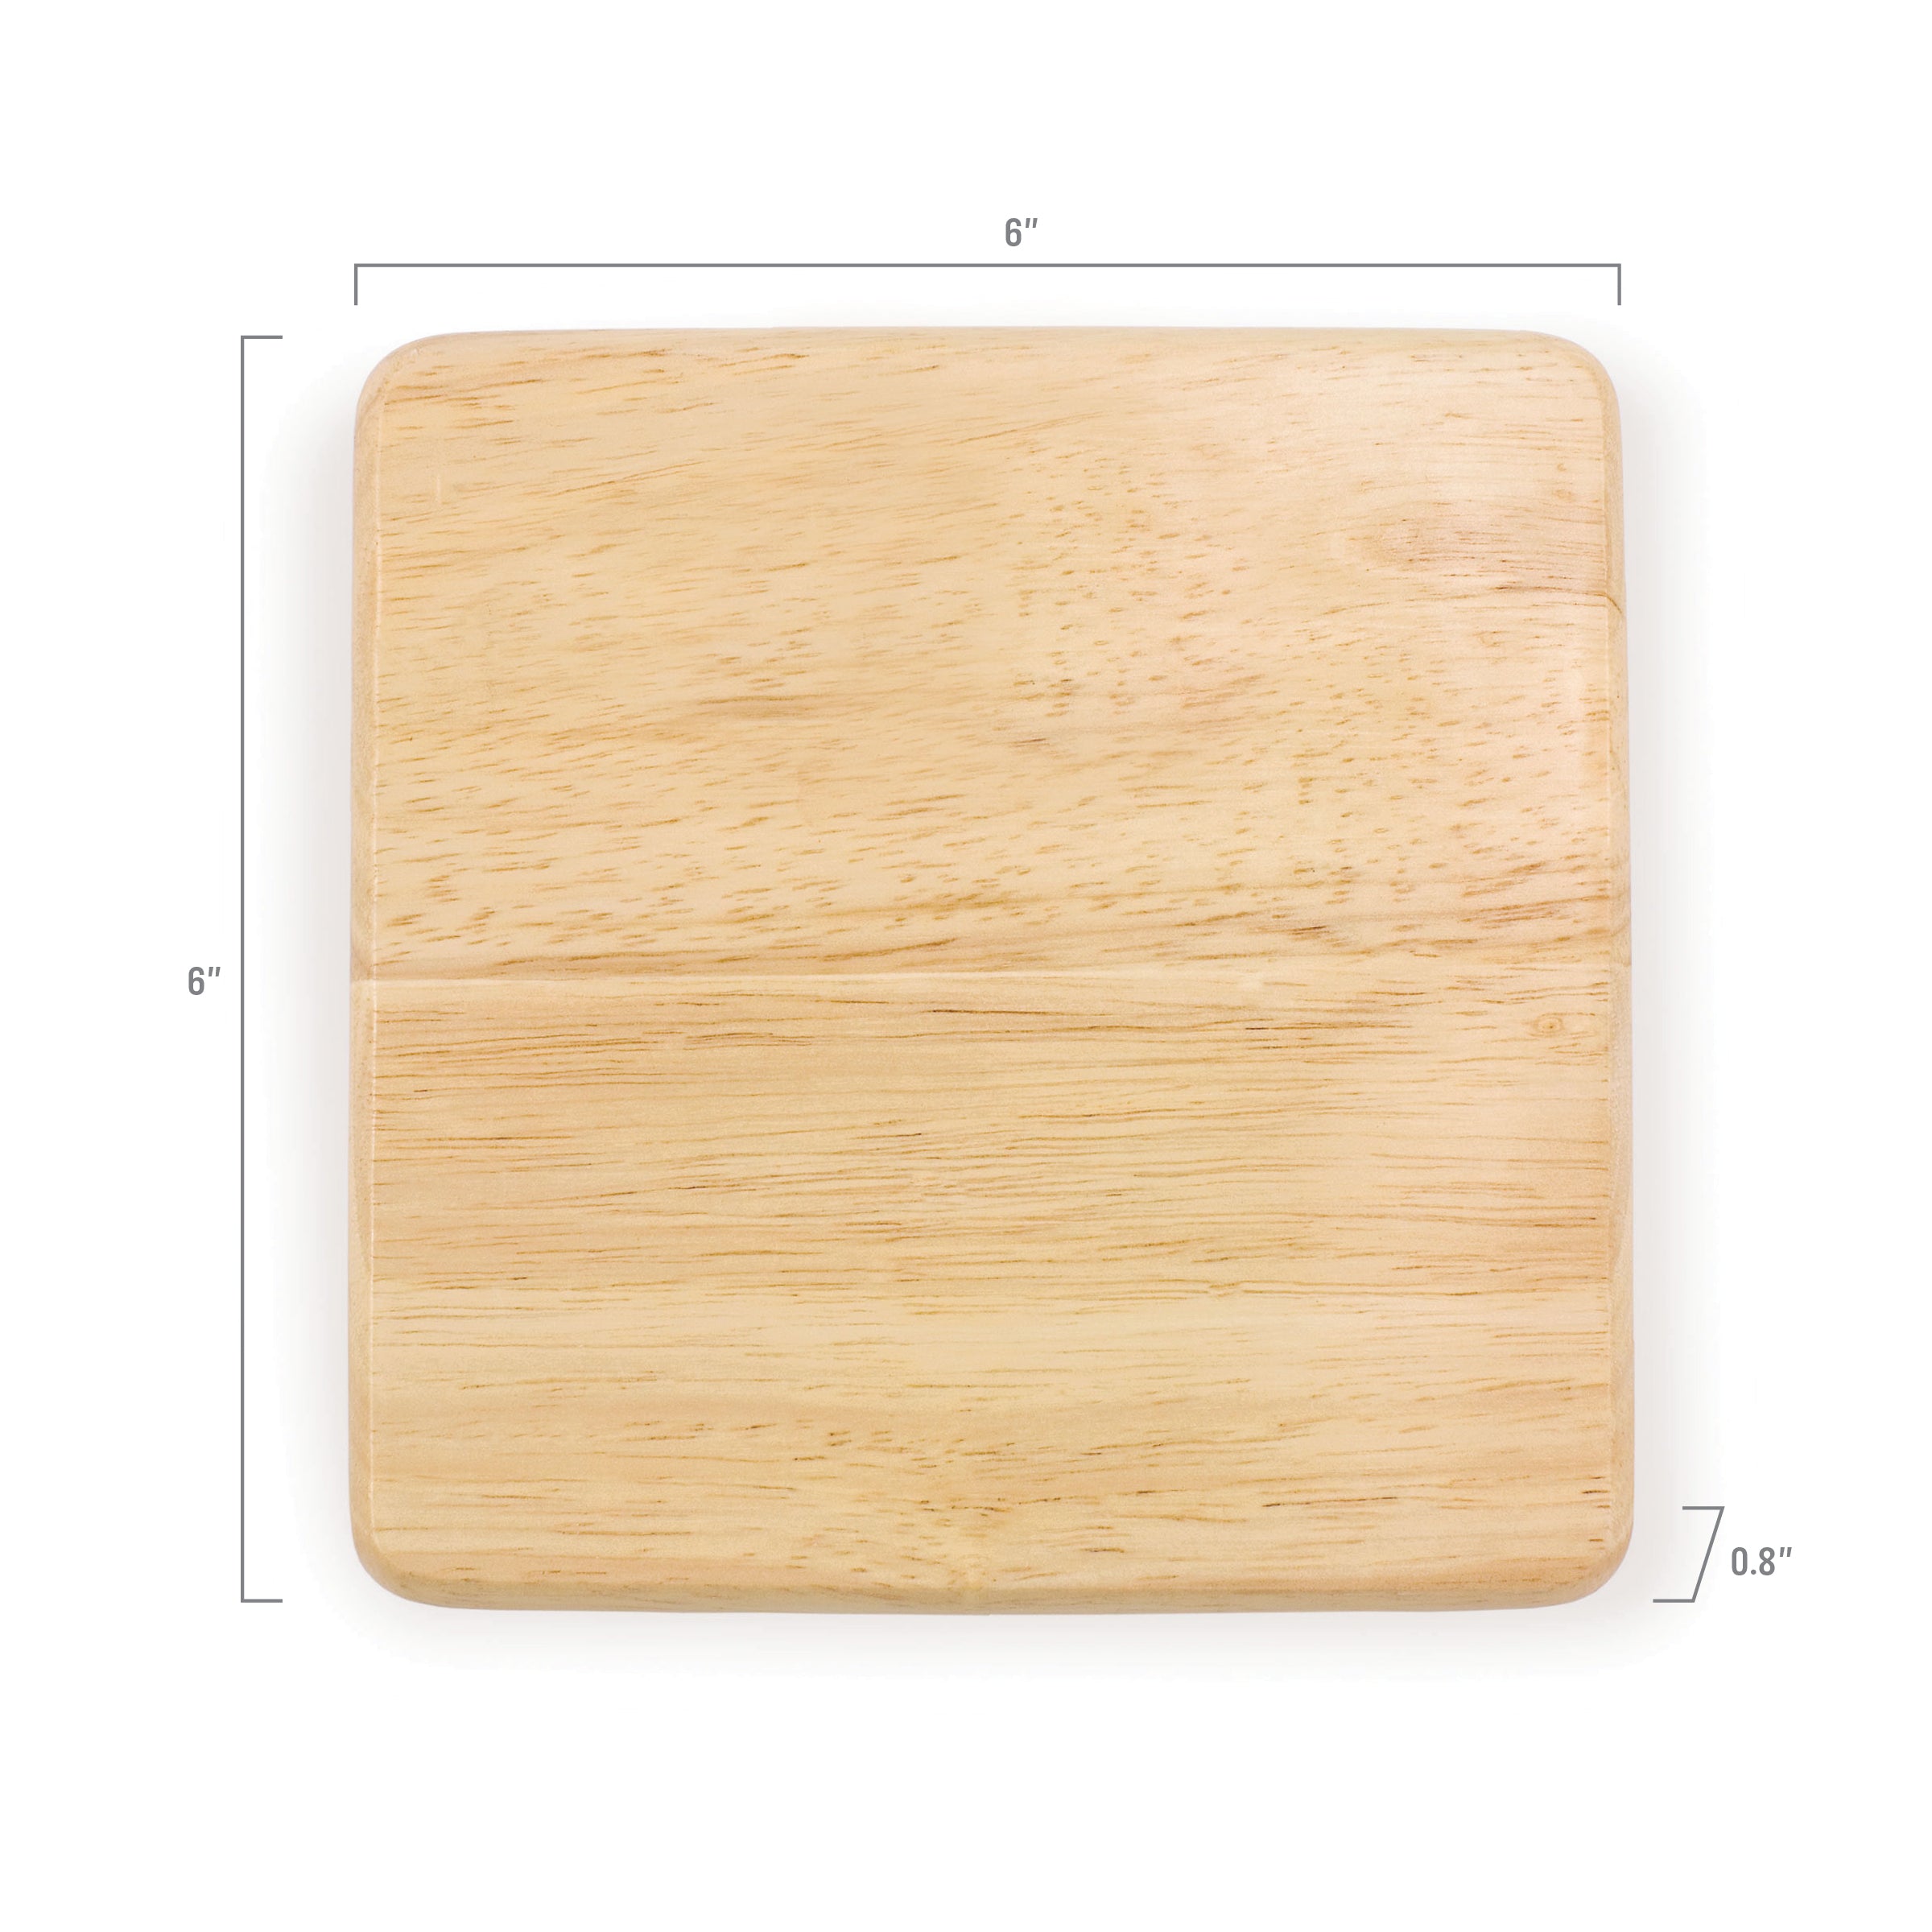 6" Square Cutting Board